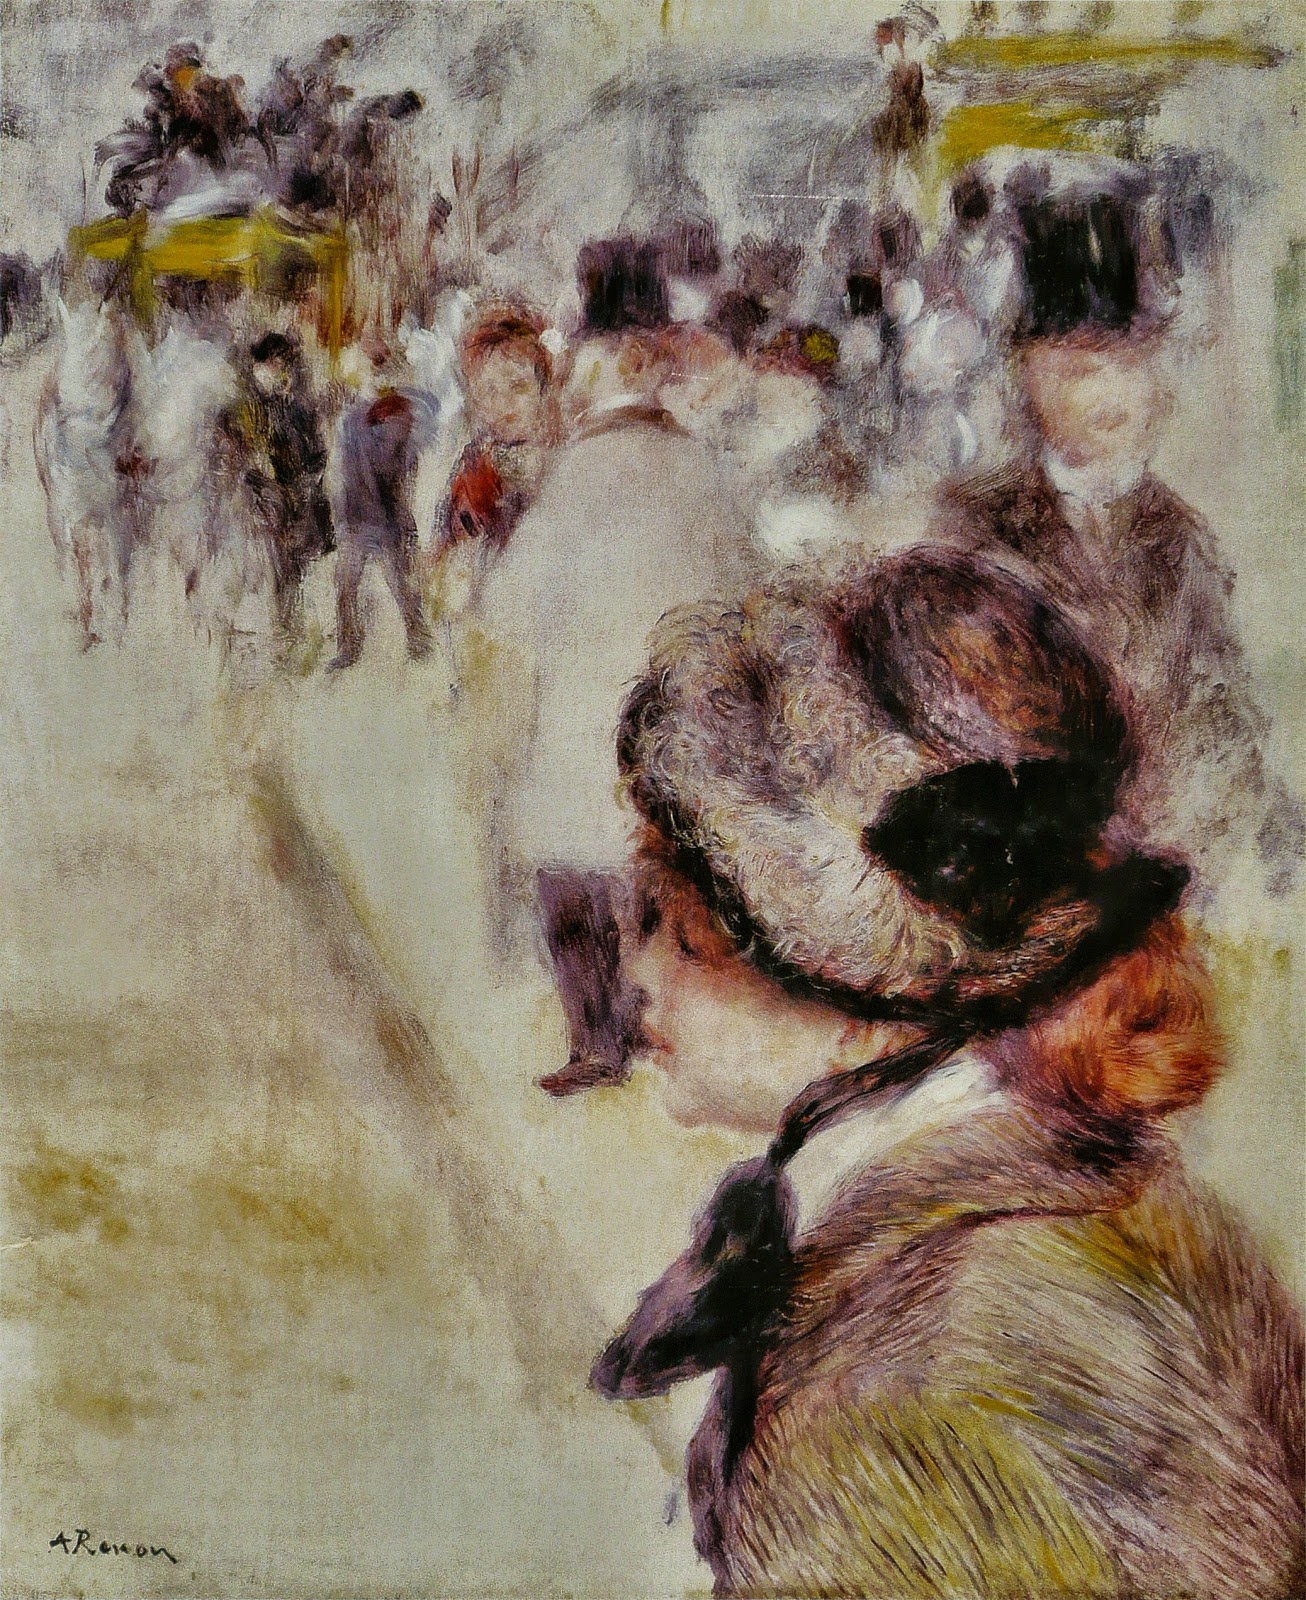 Pierre+Auguste+Renoir-1841-1-19 (252).jpg